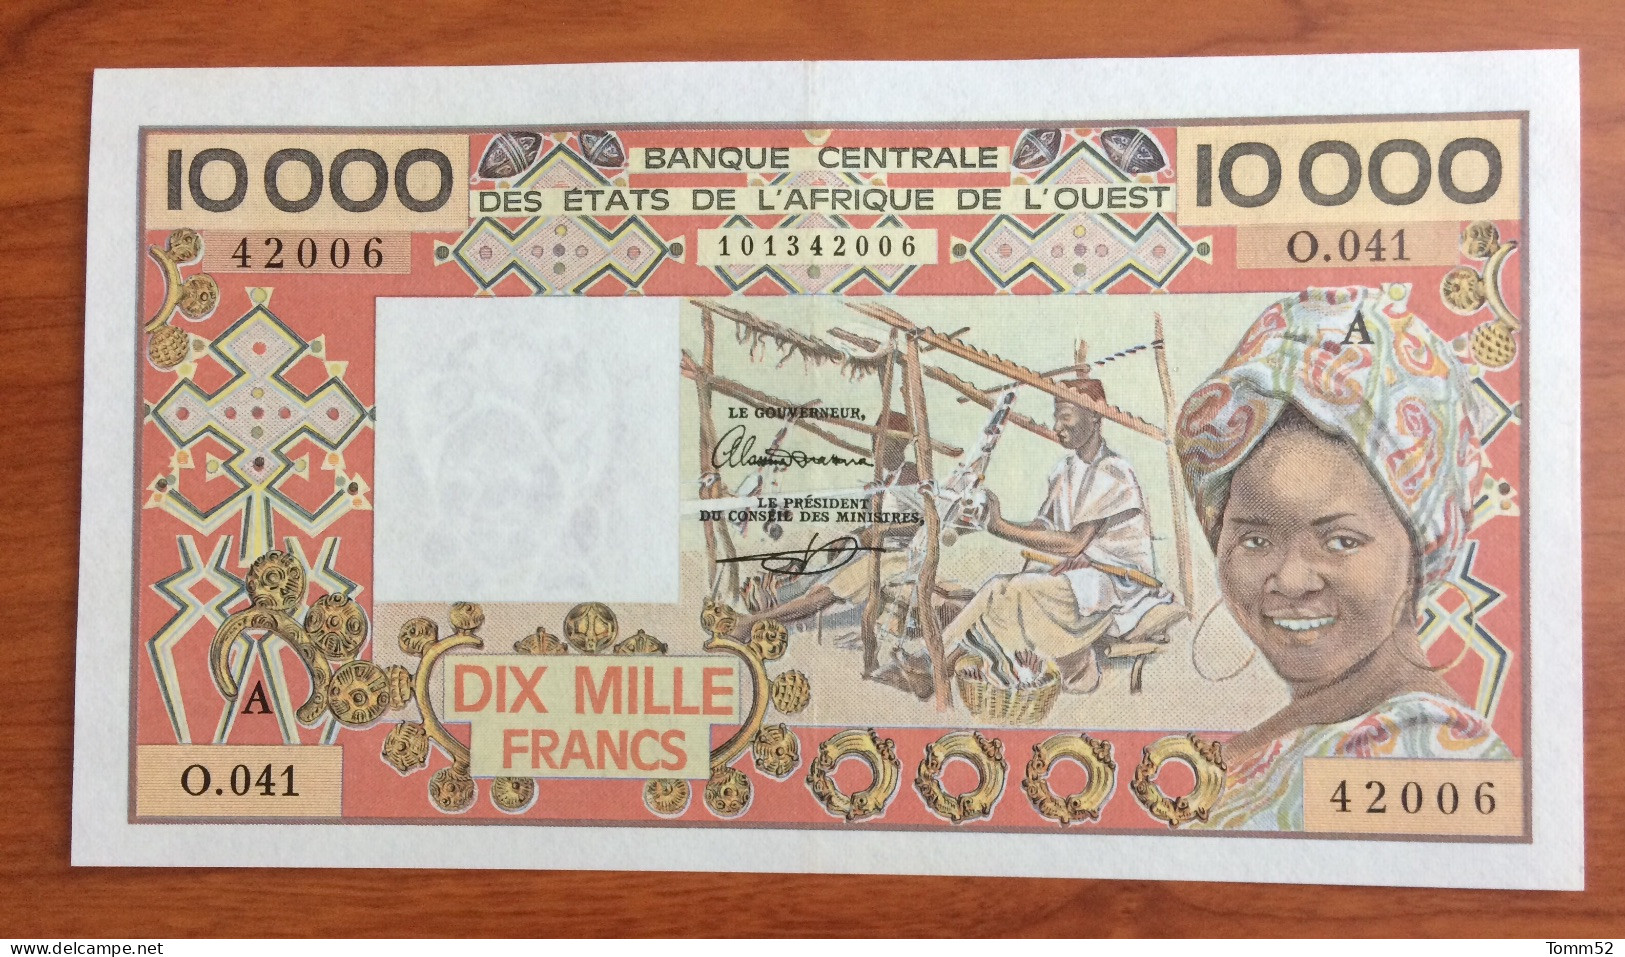 IVORY COAST/ WAS 10000 Francs AUNC/ UNC- High Grade Note - Côte D'Ivoire